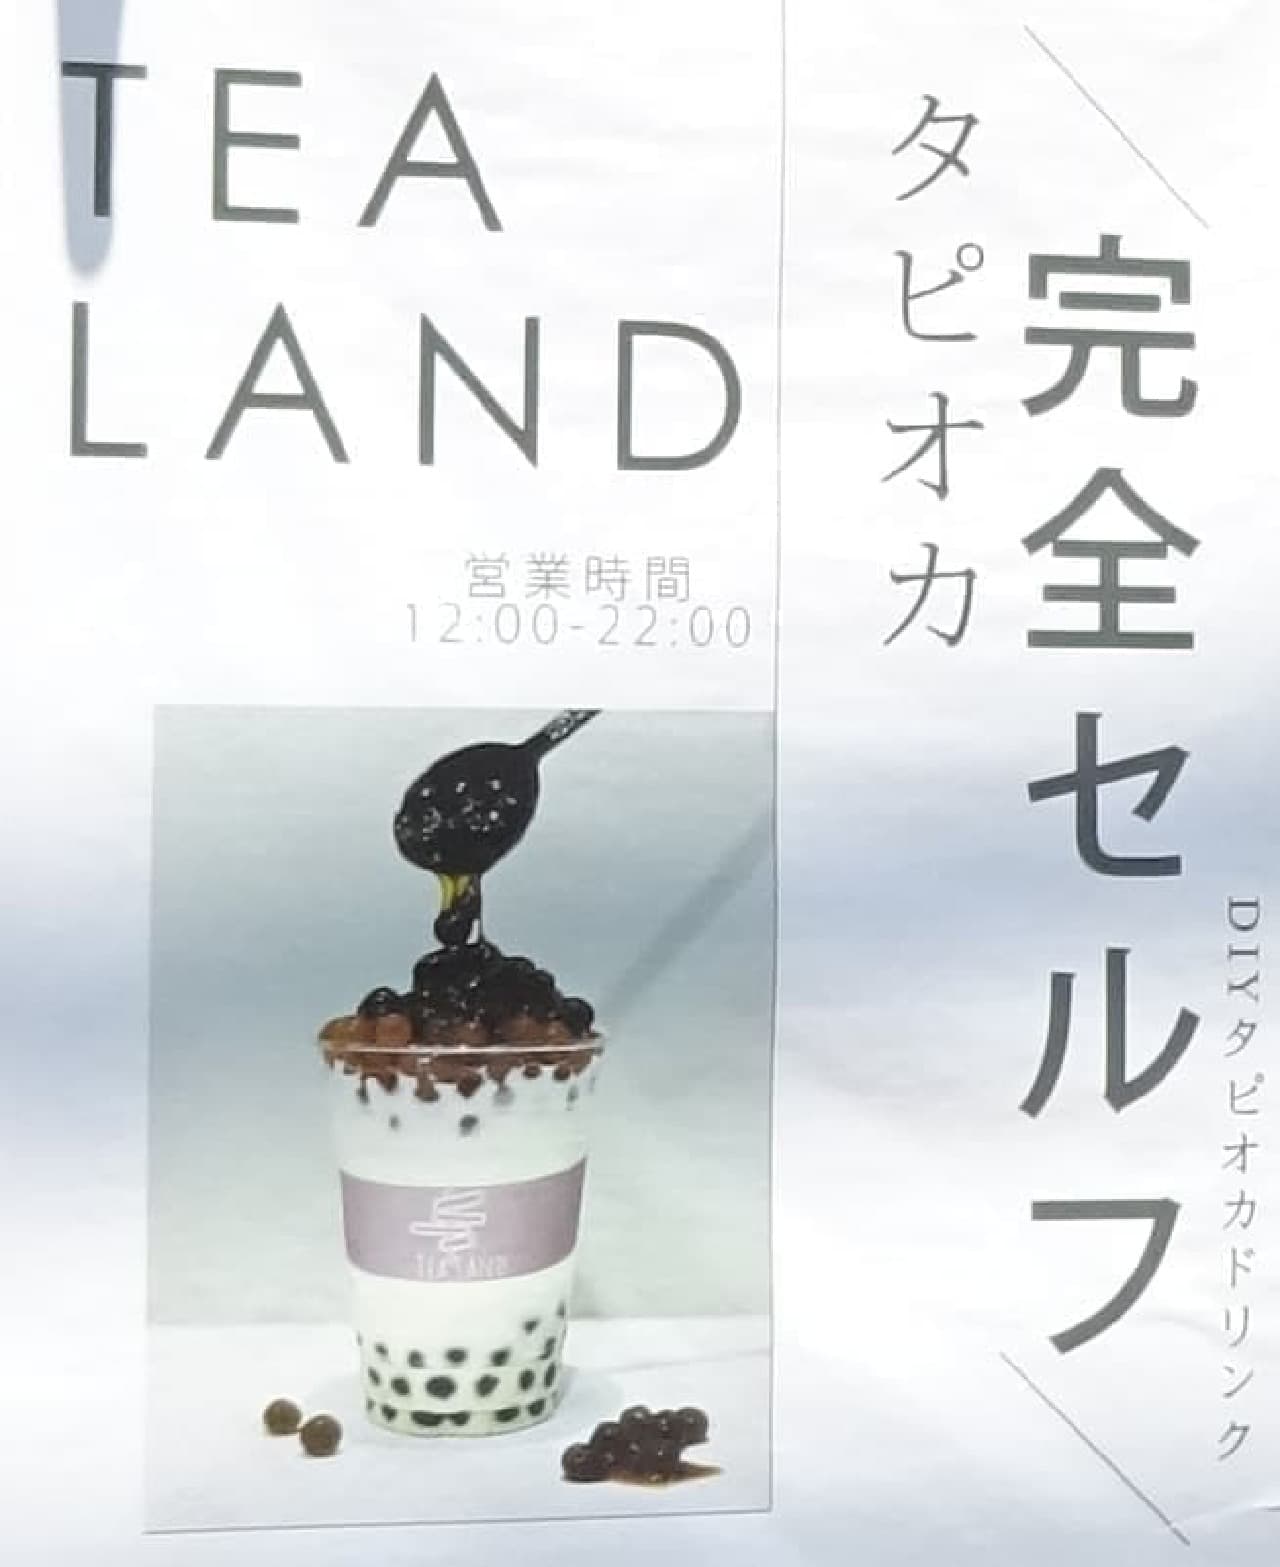 All-you-can-eat tapioca "TEA LAND" Sangenjaya store